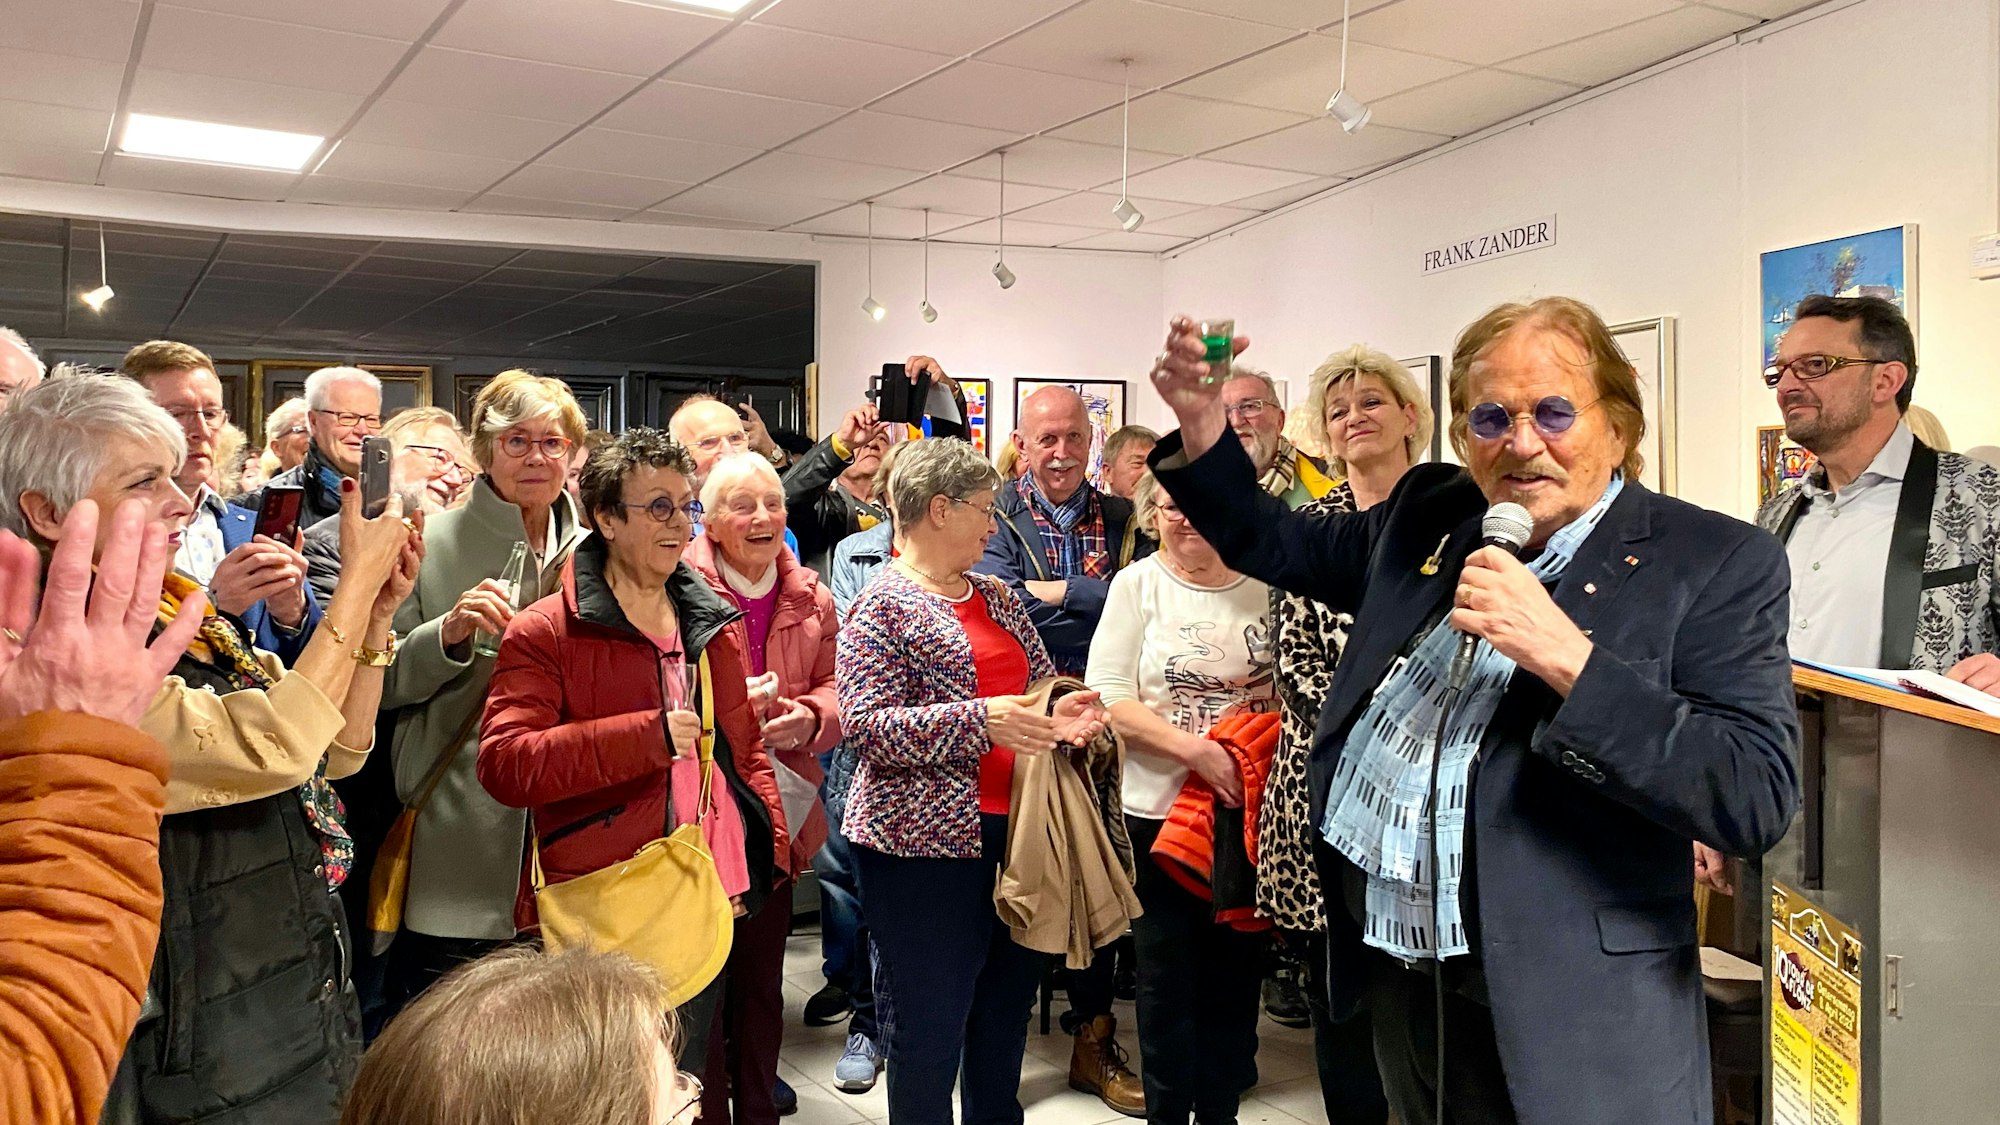 Das Bild zeigt Sänger und Künstler Frank Zander in der Galerie Wehr vor einem begeisterten Publikum.